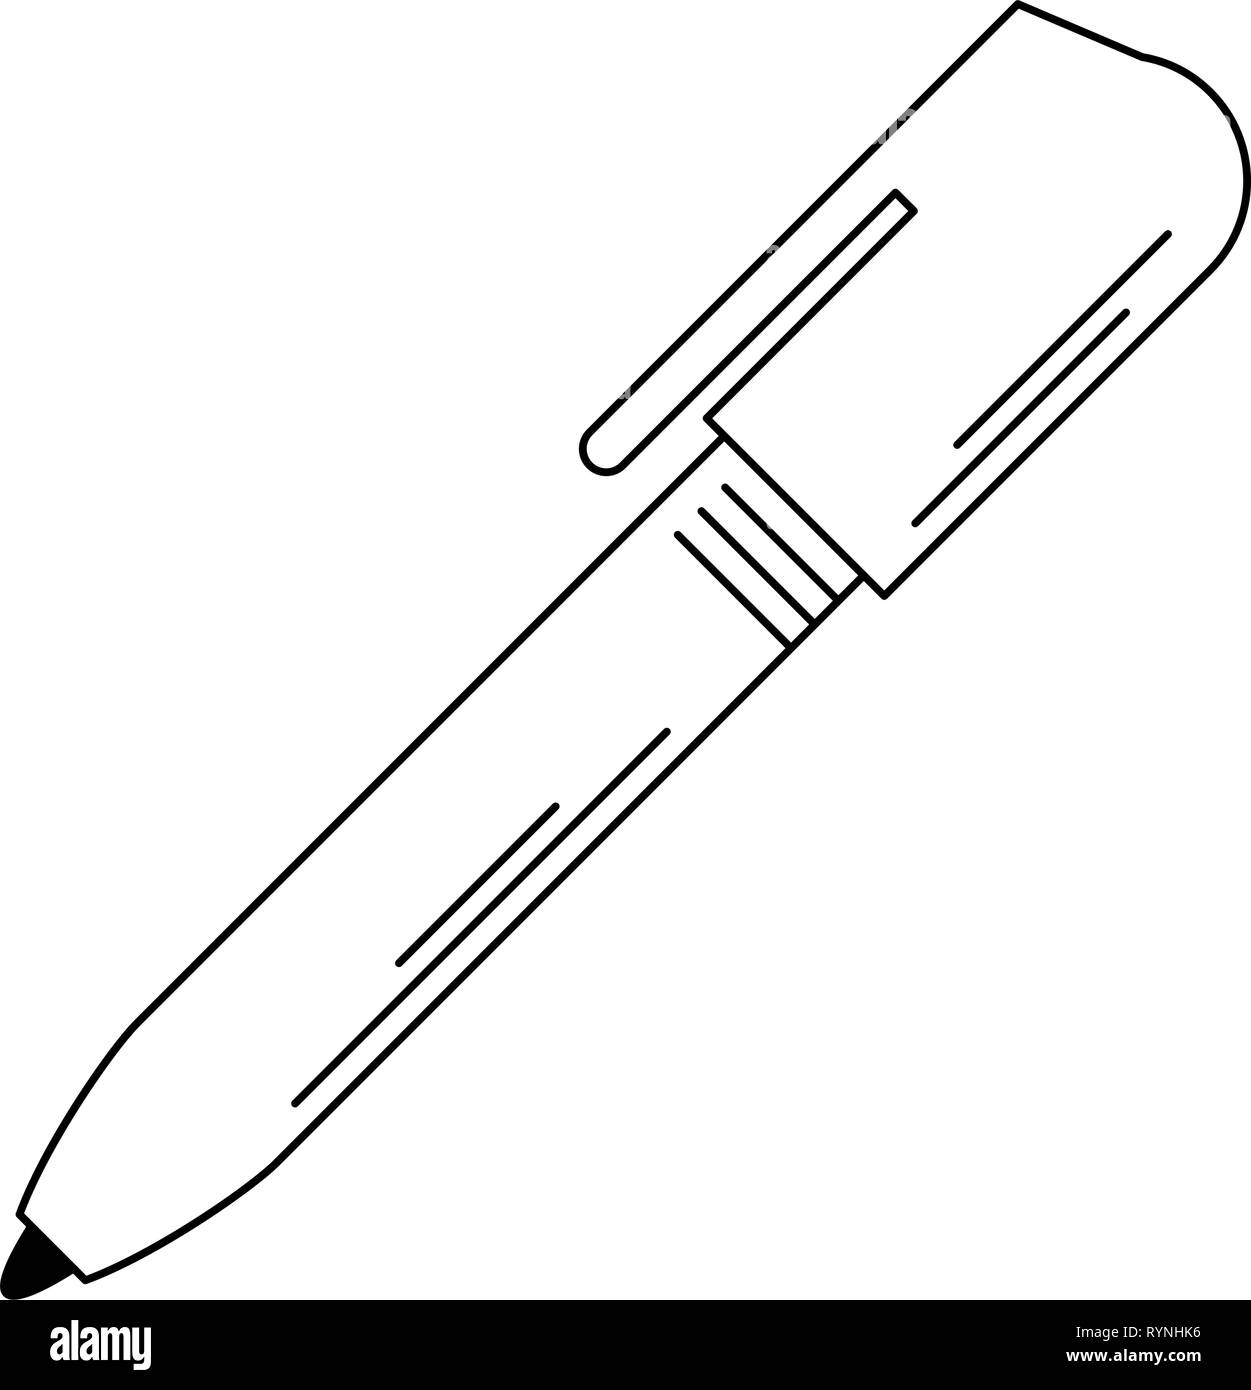 Pen office utensil isolated in black and white Stock Vector Image & Art ...